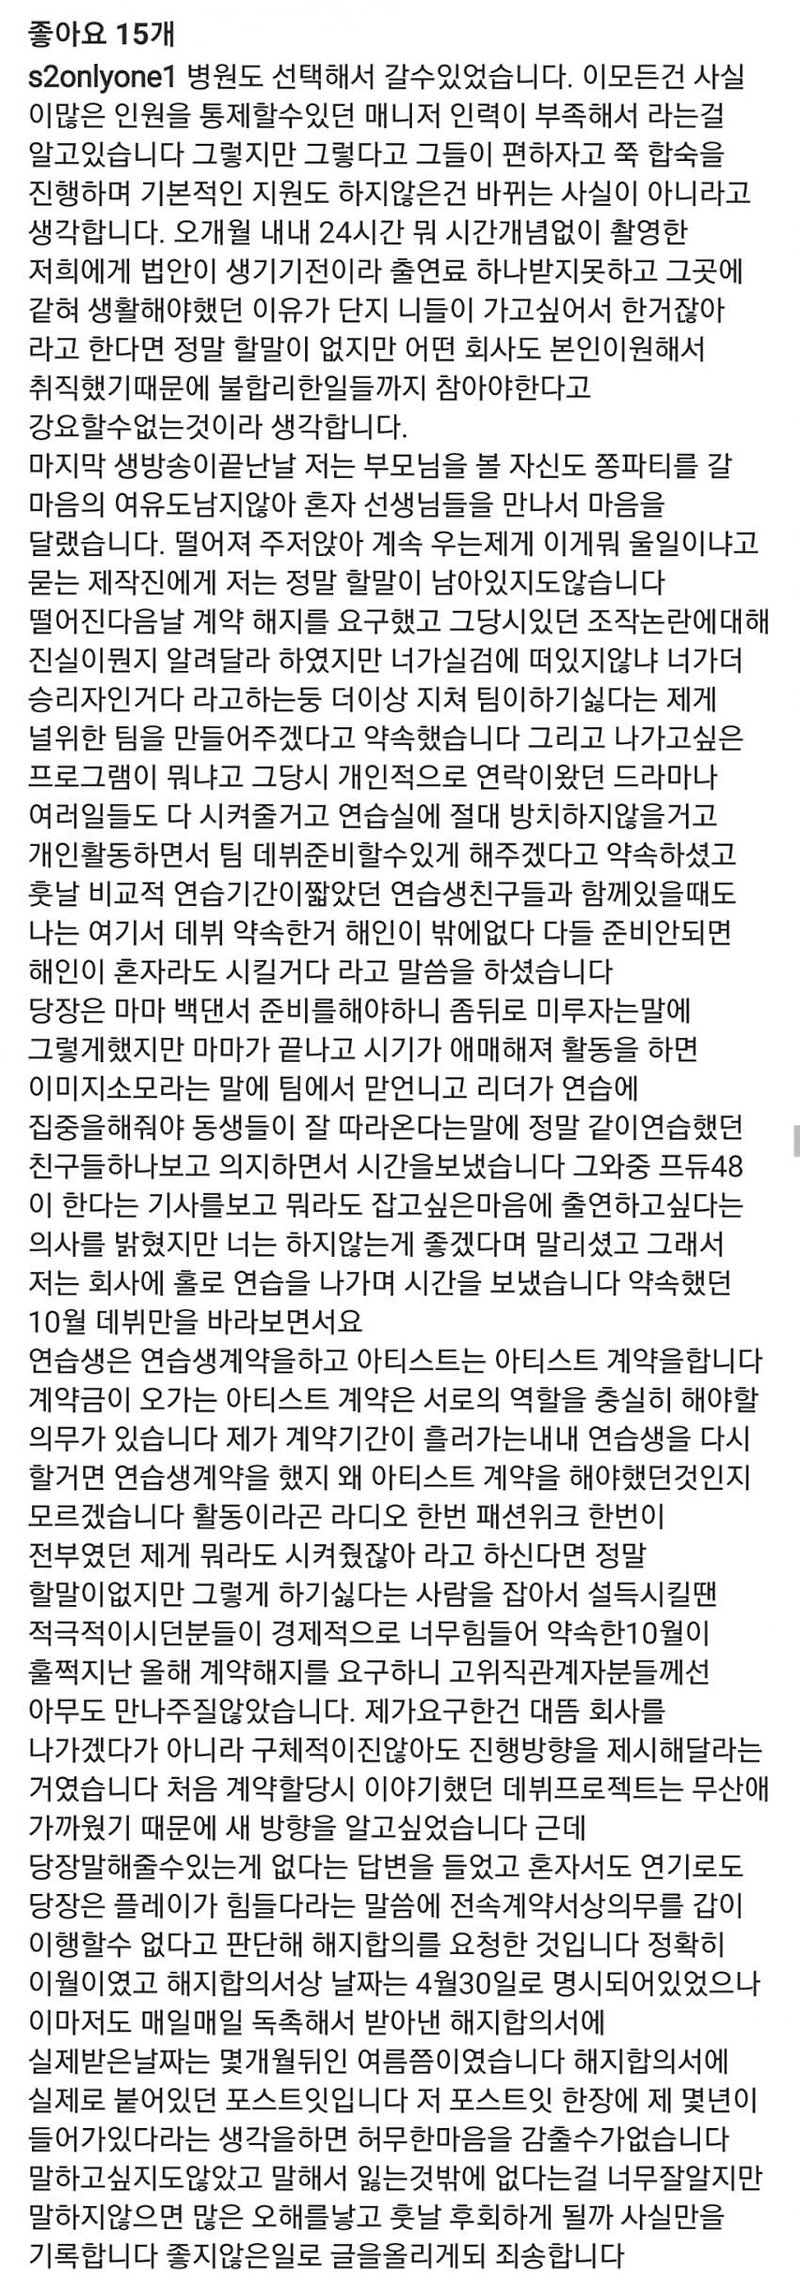 방금전 올라온 이해인 인스타그램 아이돌학교 관련글